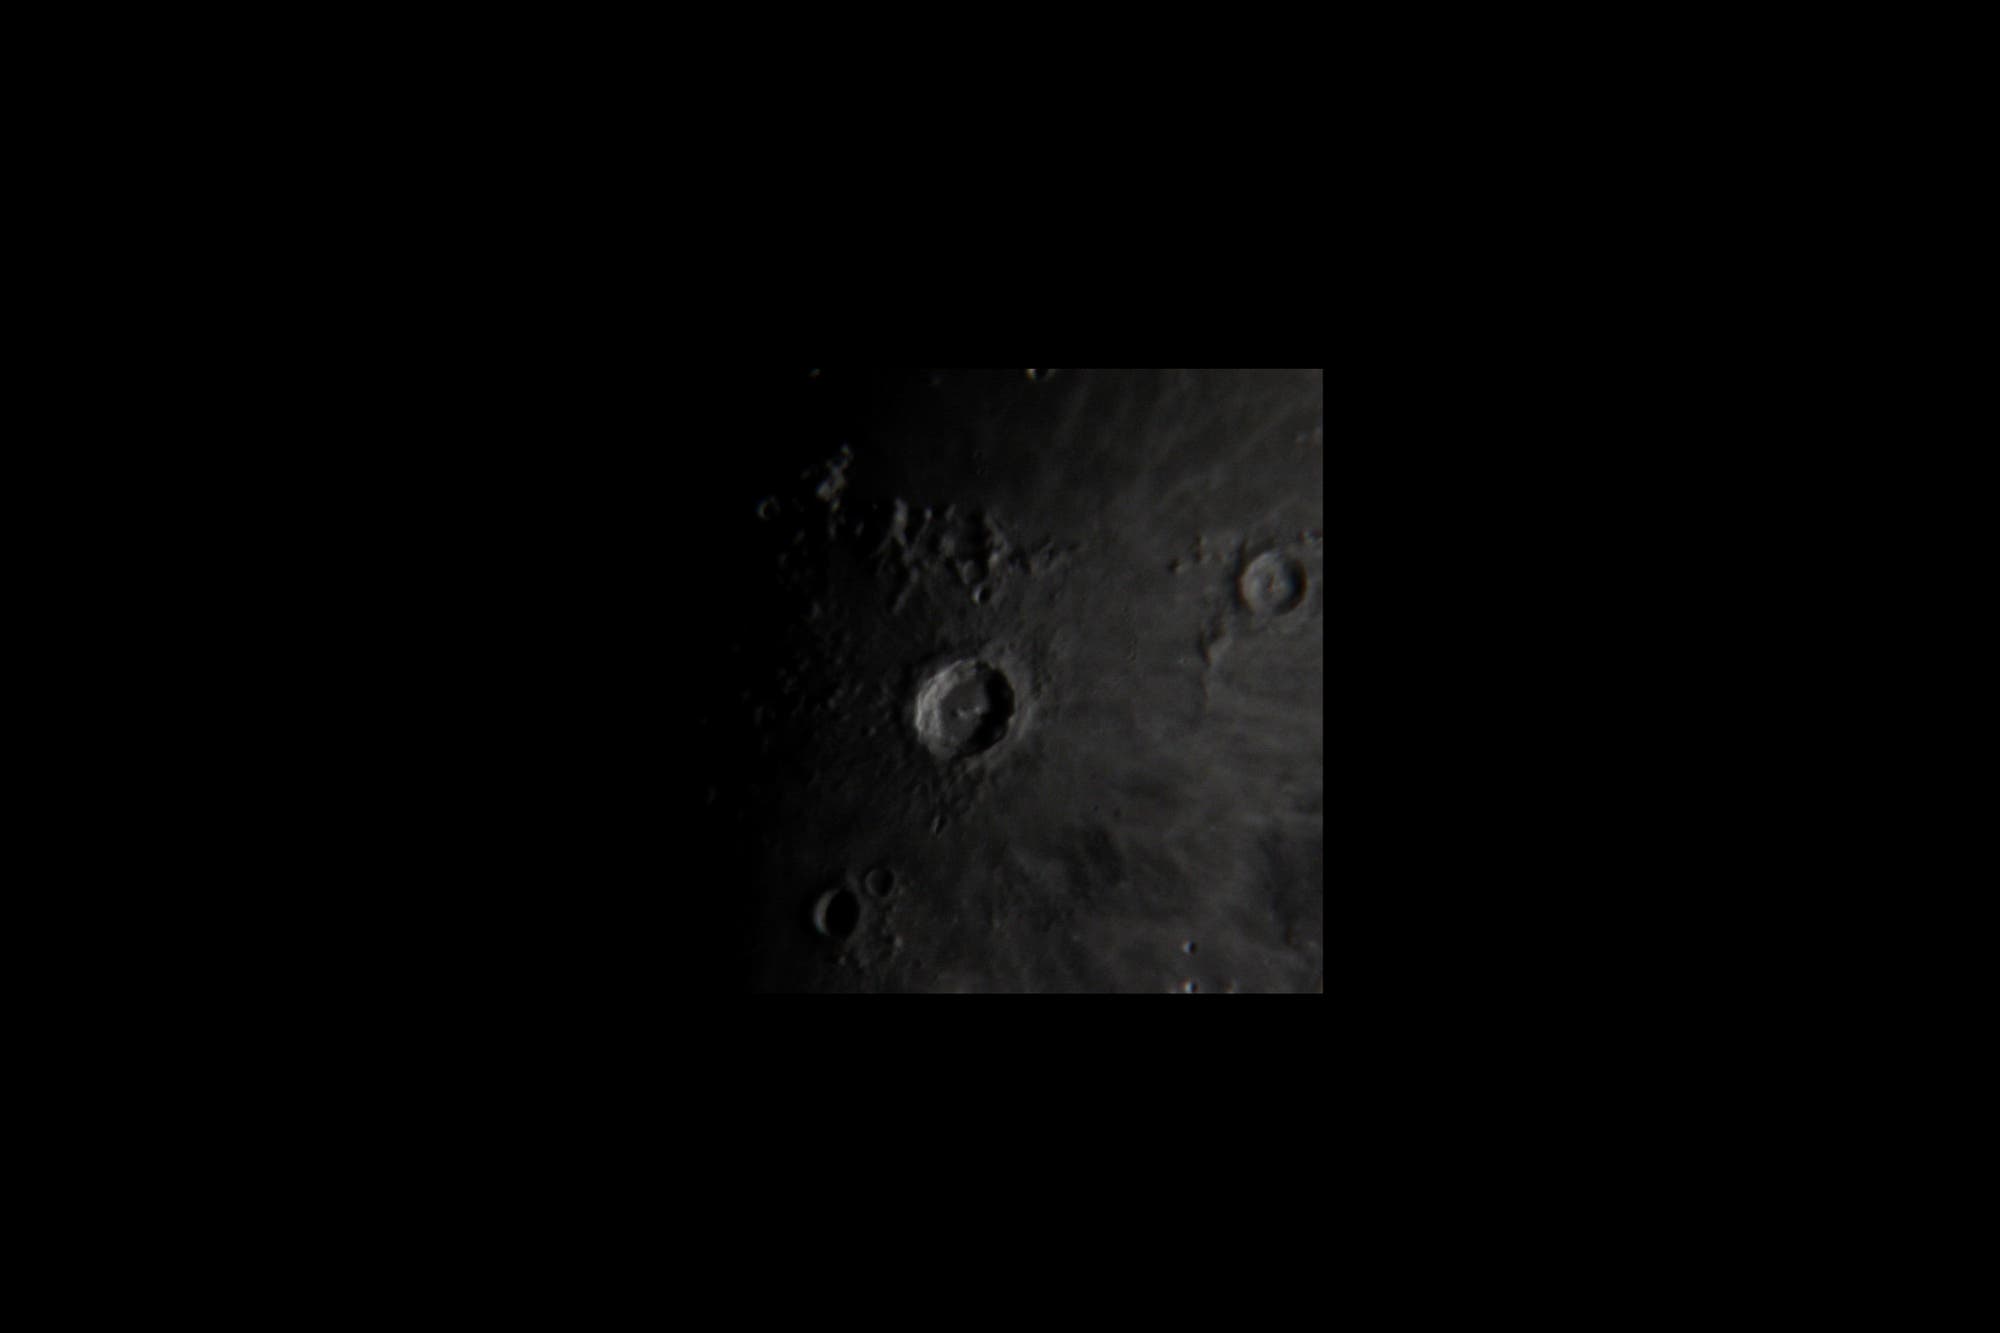 Mondkrater Kopernikus